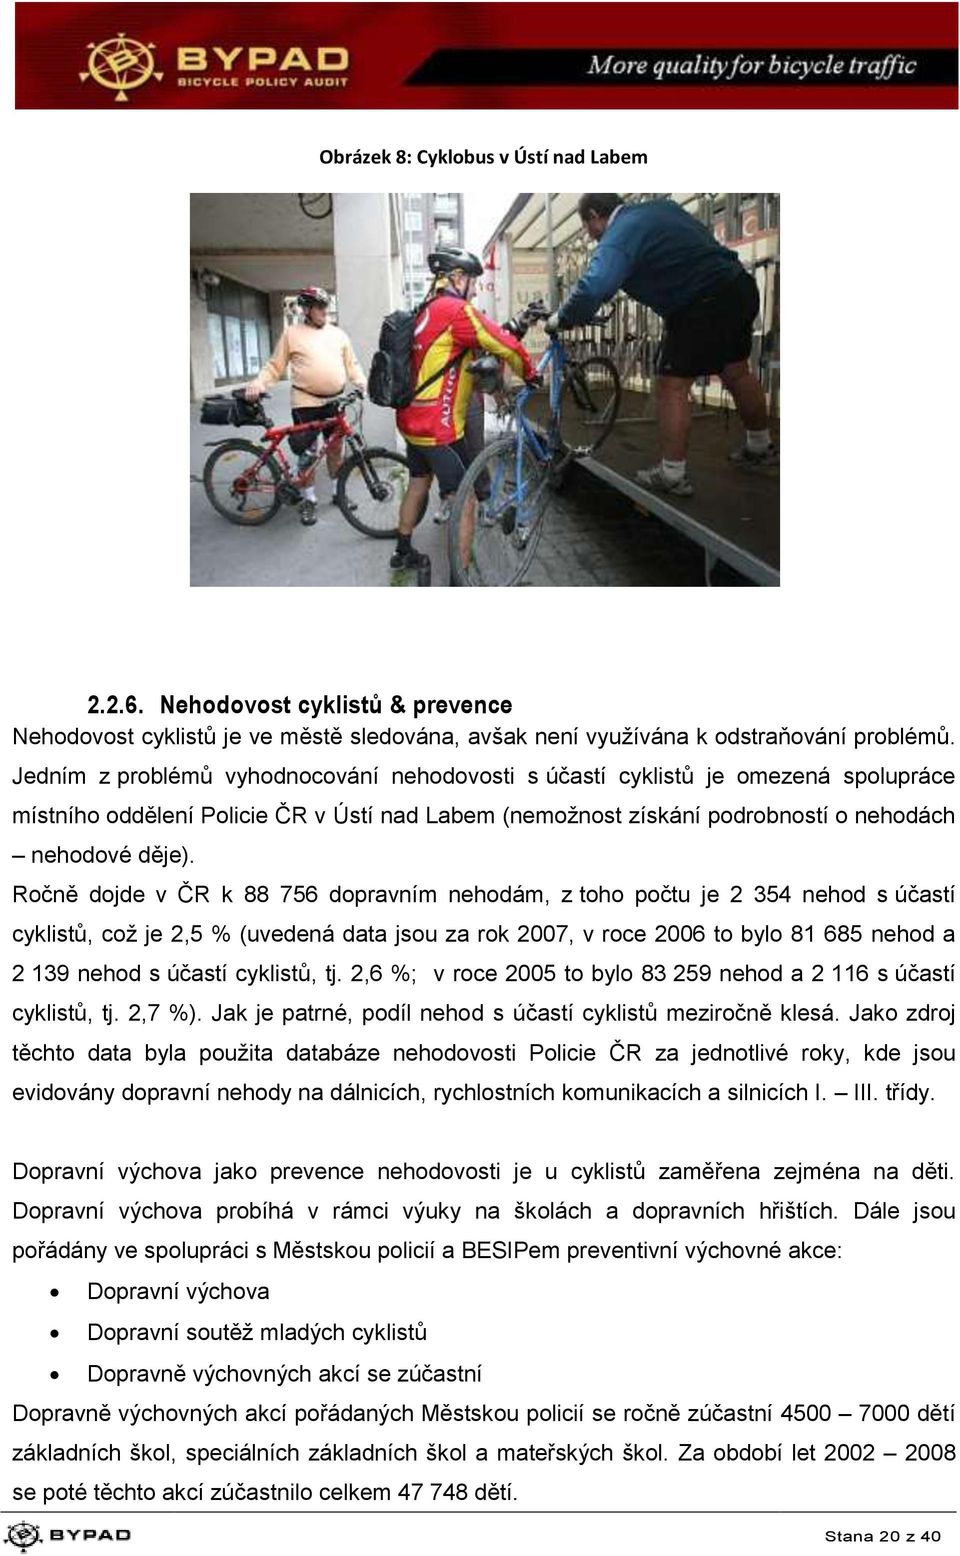 Ročně dojde v ČR k 88 756 dopravním nehodám, z toho počtu je 2 354 nehod s účastí cyklistů, což je 2,5 % (uvedená data jsou za rok 2007, v roce 2006 to bylo 81 685 nehod a 2 139 nehod s účastí